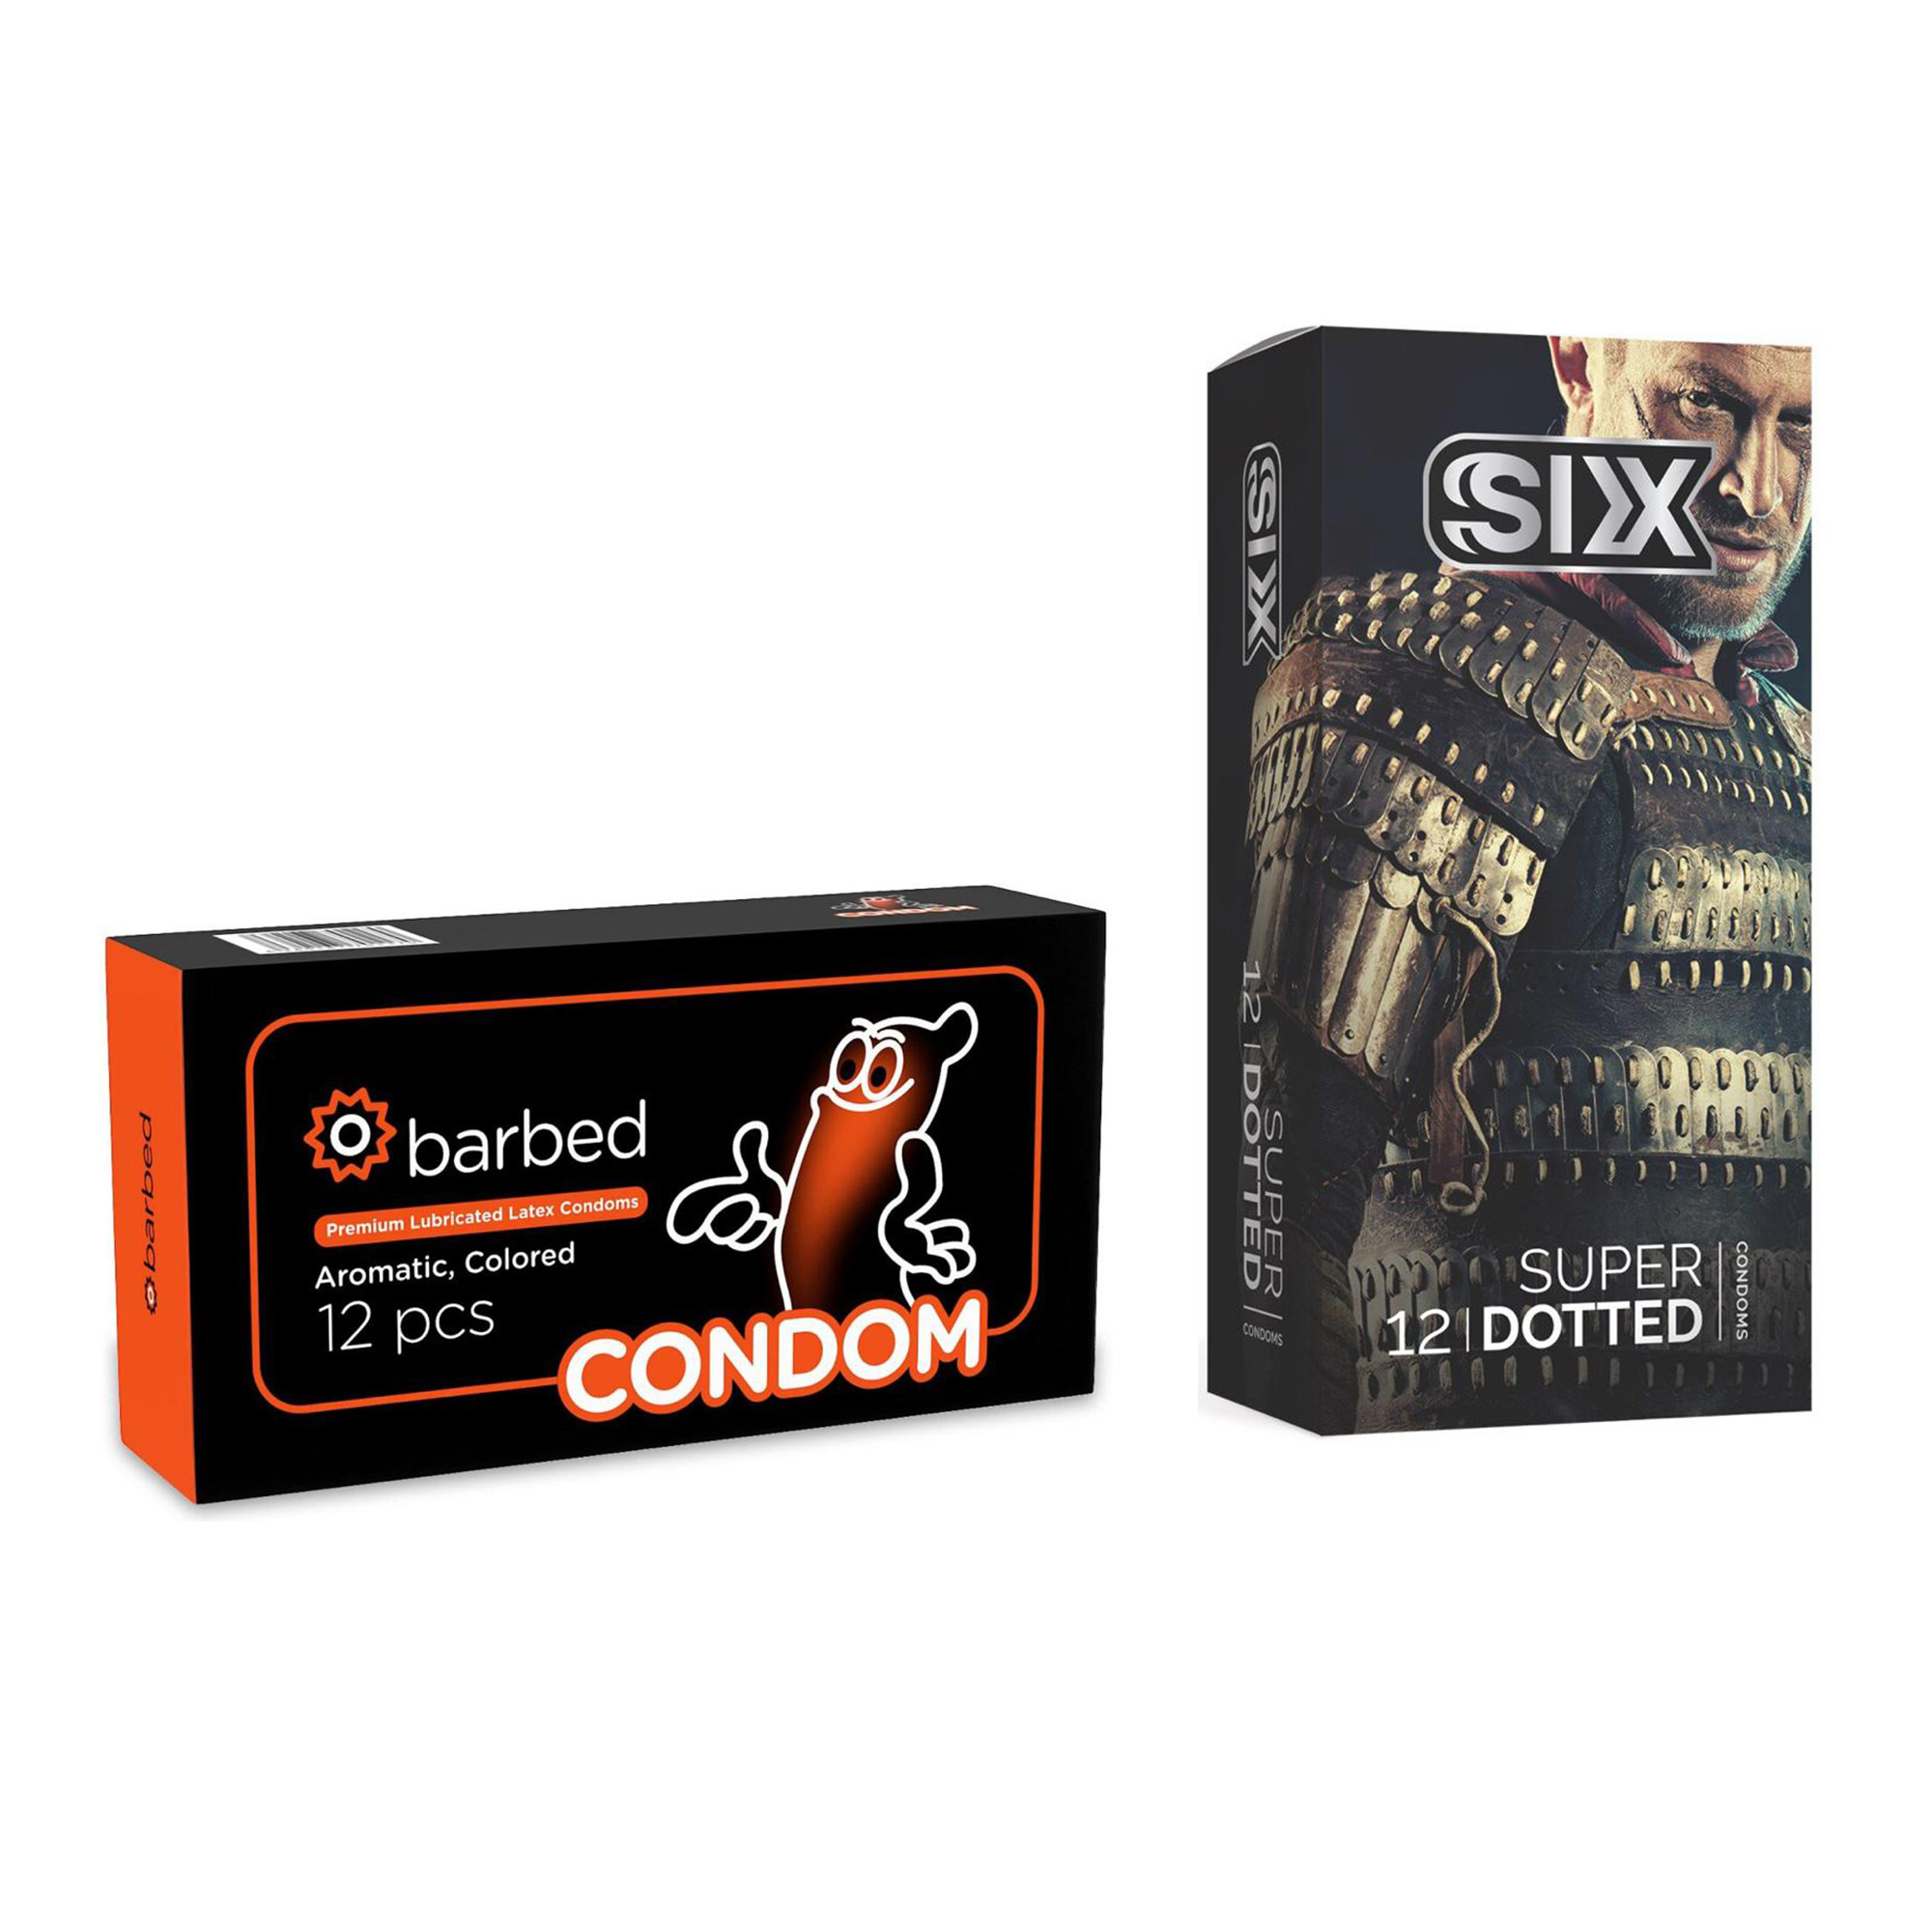 کاندوم سیکس مدل Super Dotted بسته 12 عددی به همراه کاندوم کاندوم مدل Barbed بسته 12 عددی